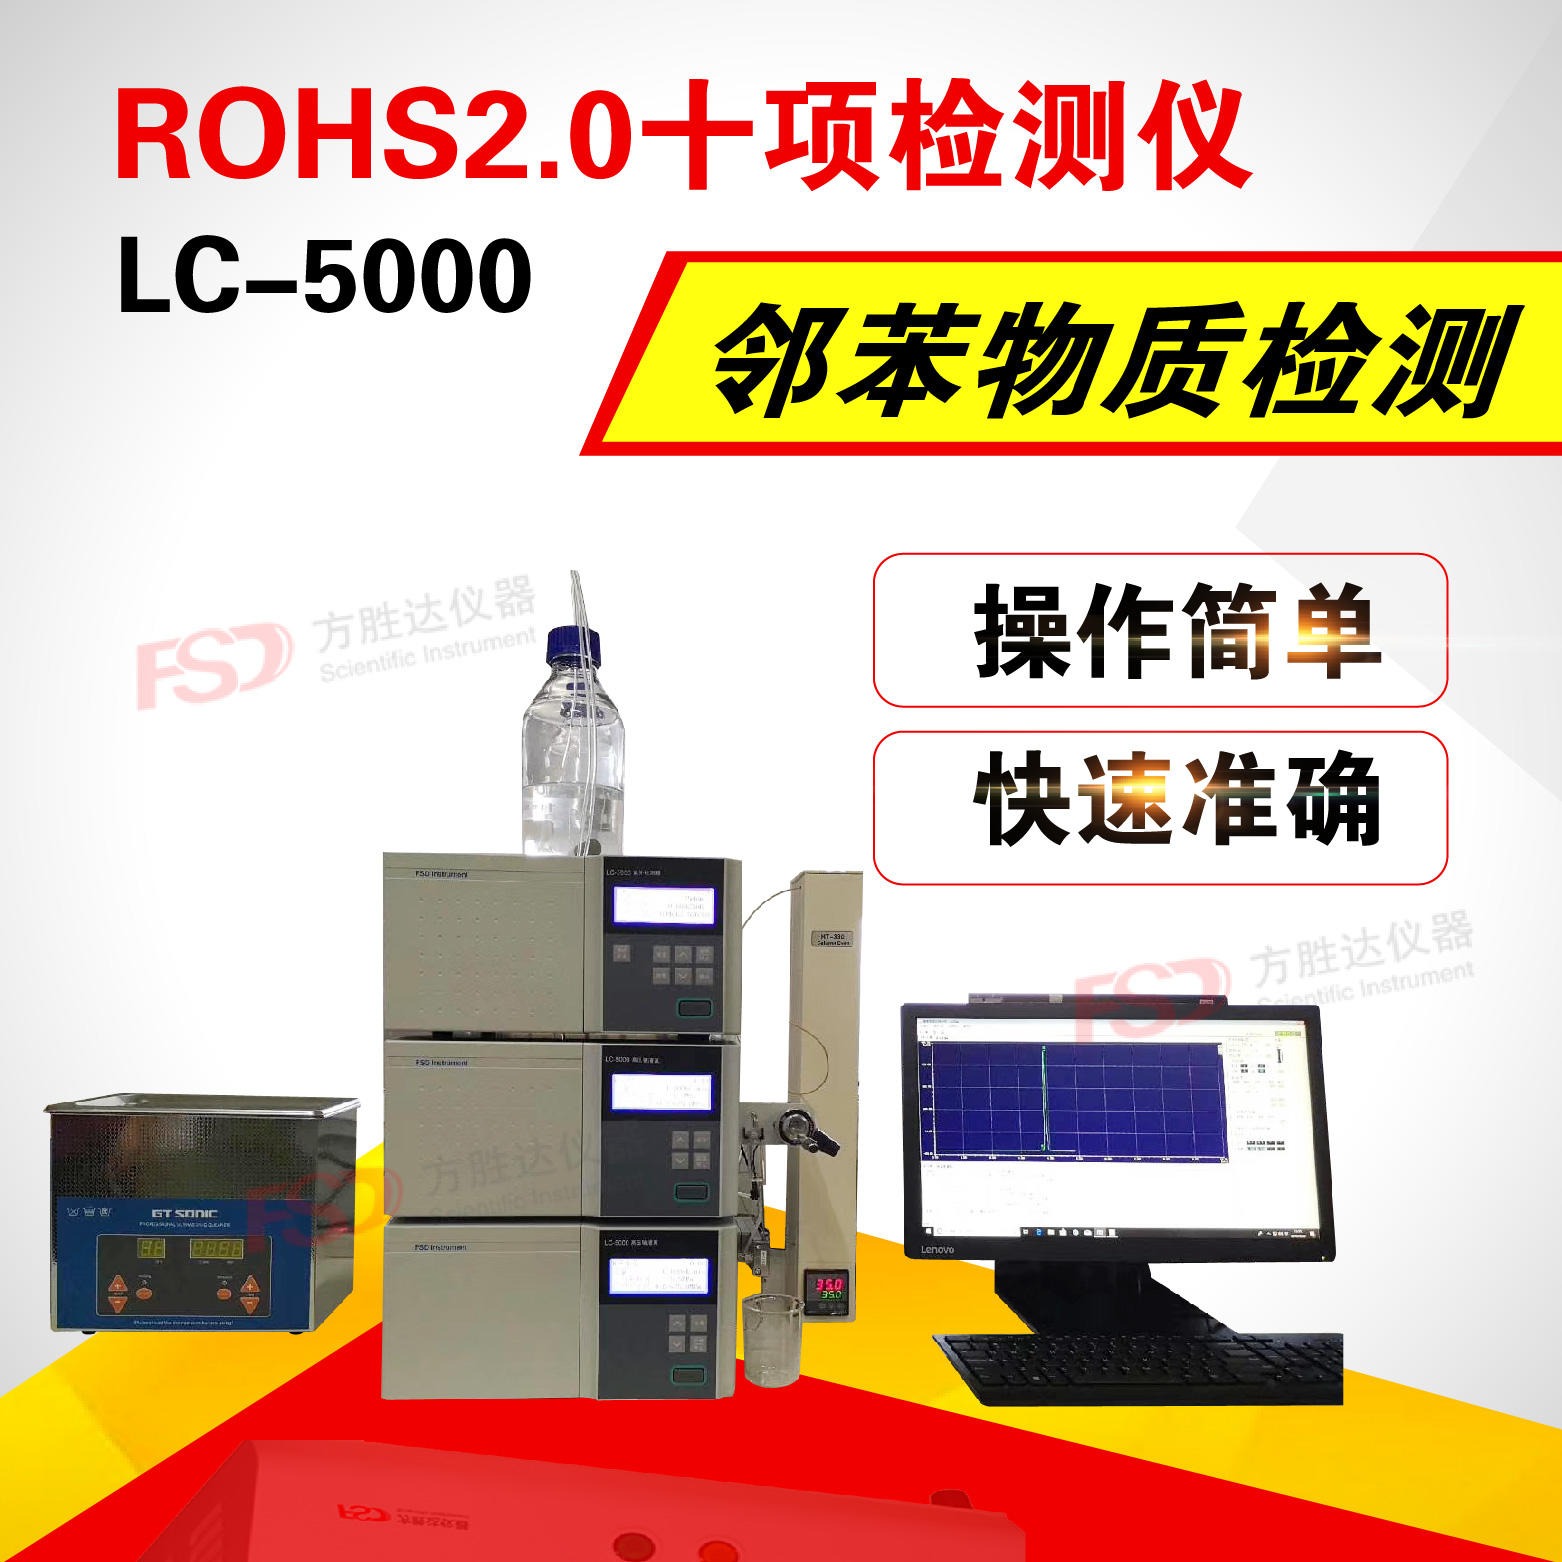 ROHS2.0检测仪全套厂家出售